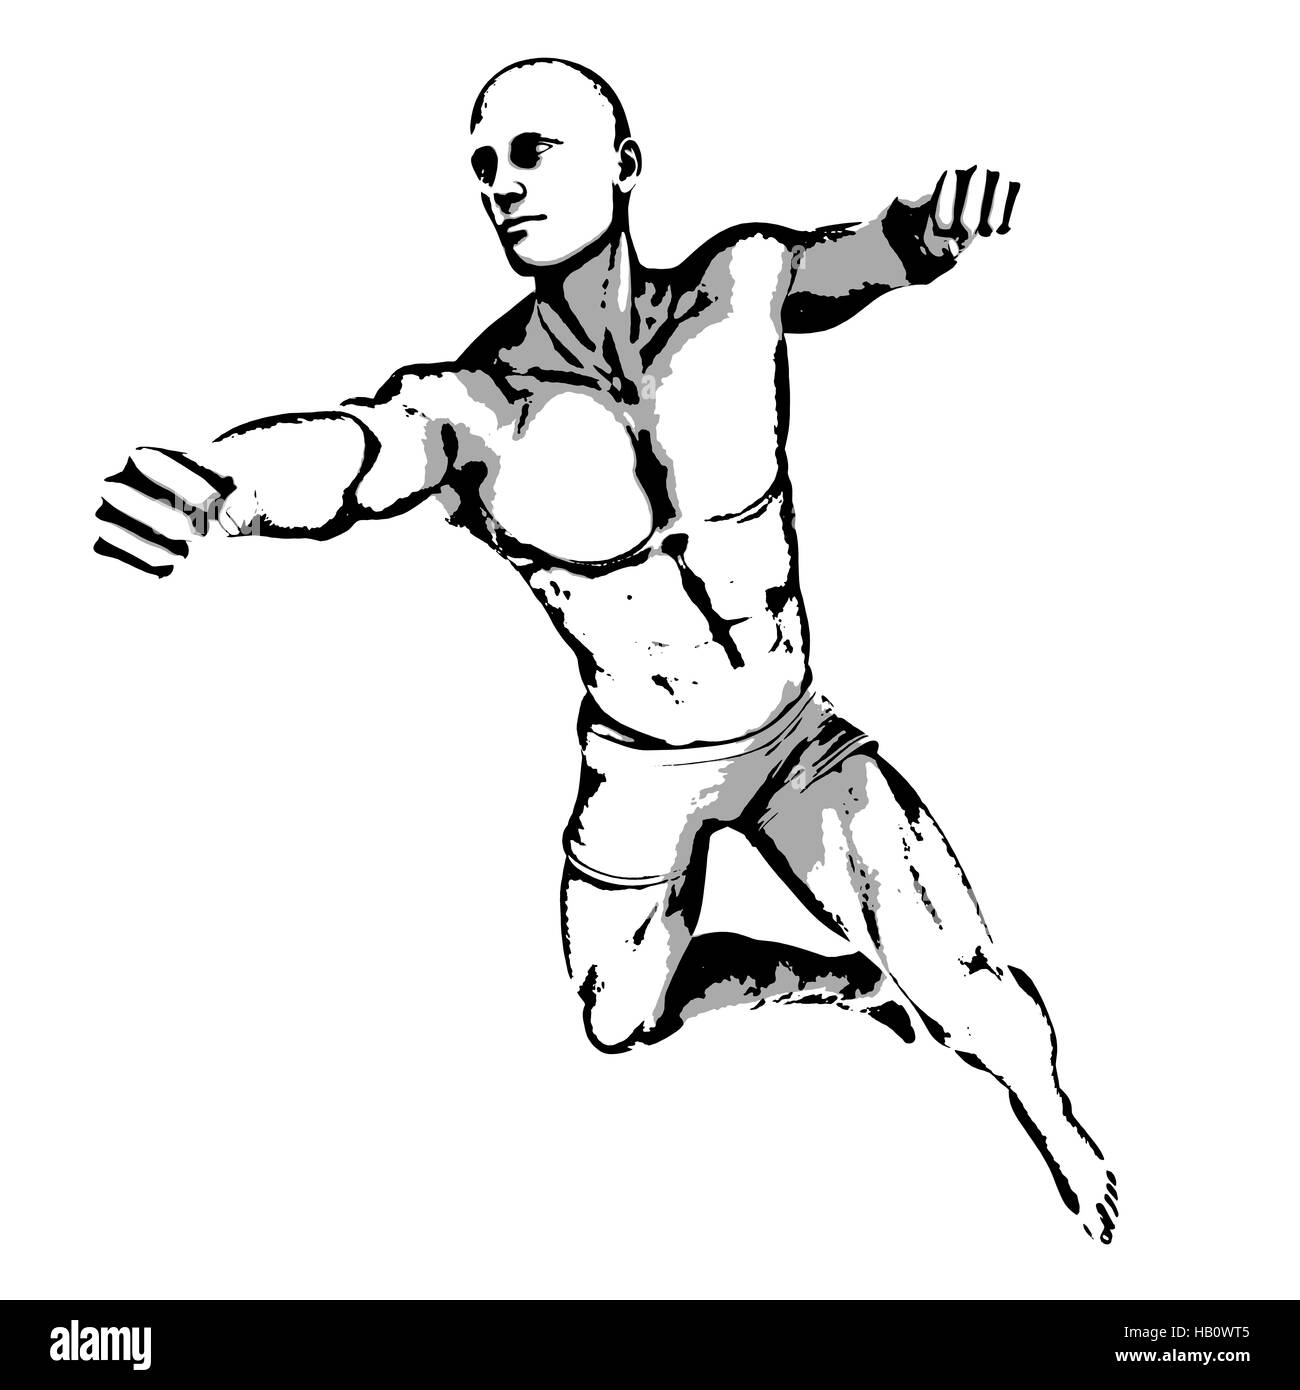 Comic Book Hero Pose in Sketch Ink Illustration Stock Photo